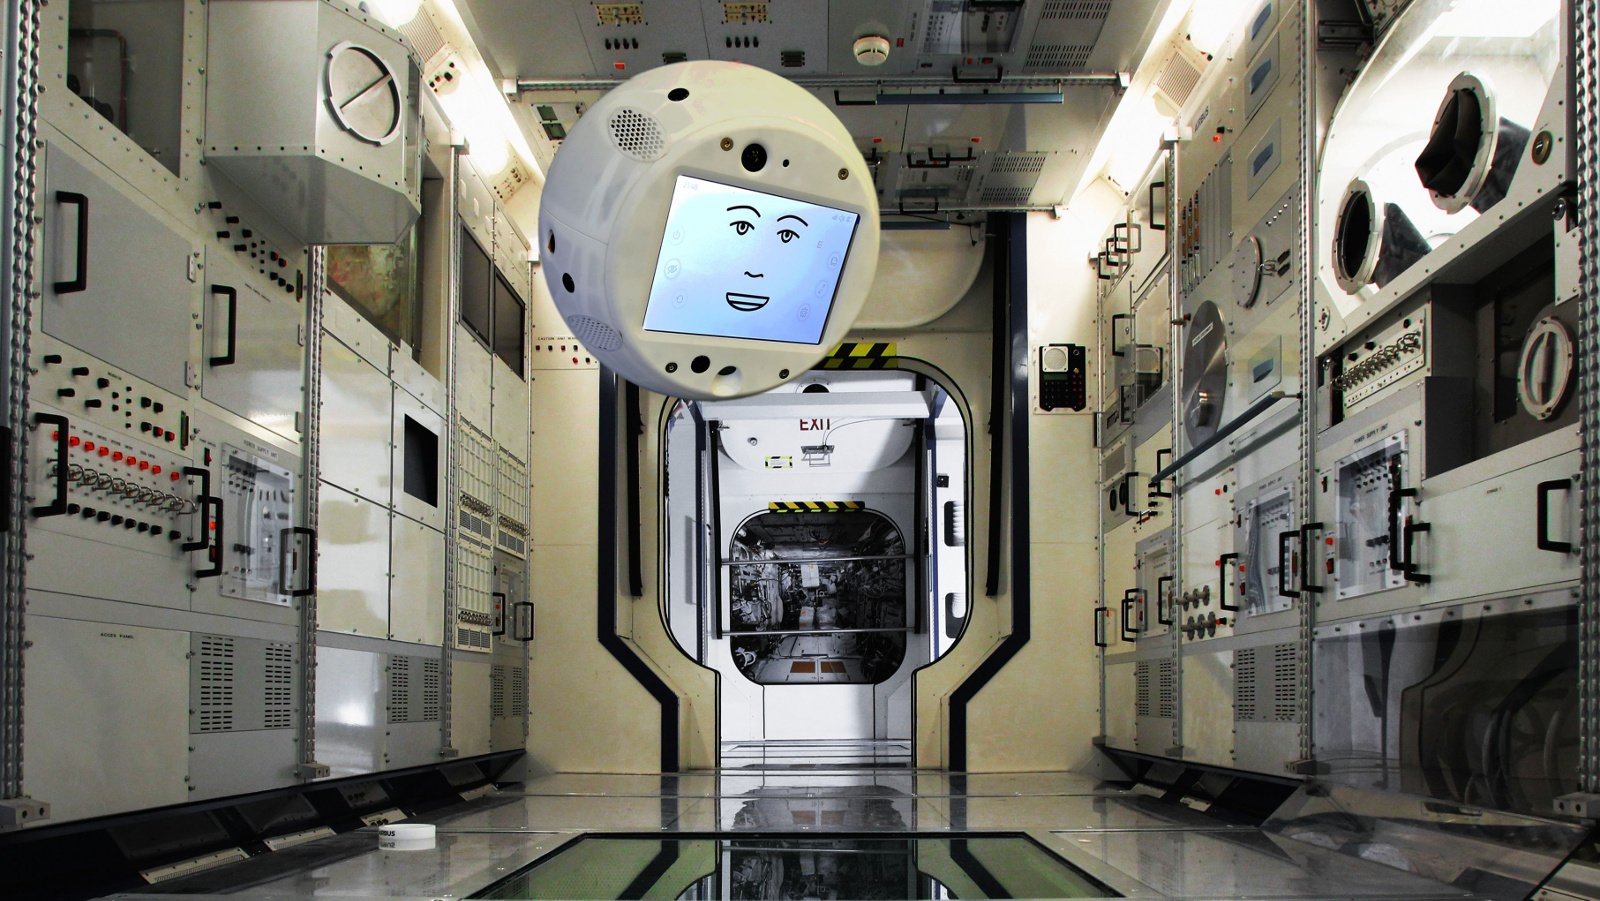 एक नया चालक दल के सदस्य के आईएसएस उड़ान हो जाएगा रोबोट कृत्रिम बुद्धि के साथ